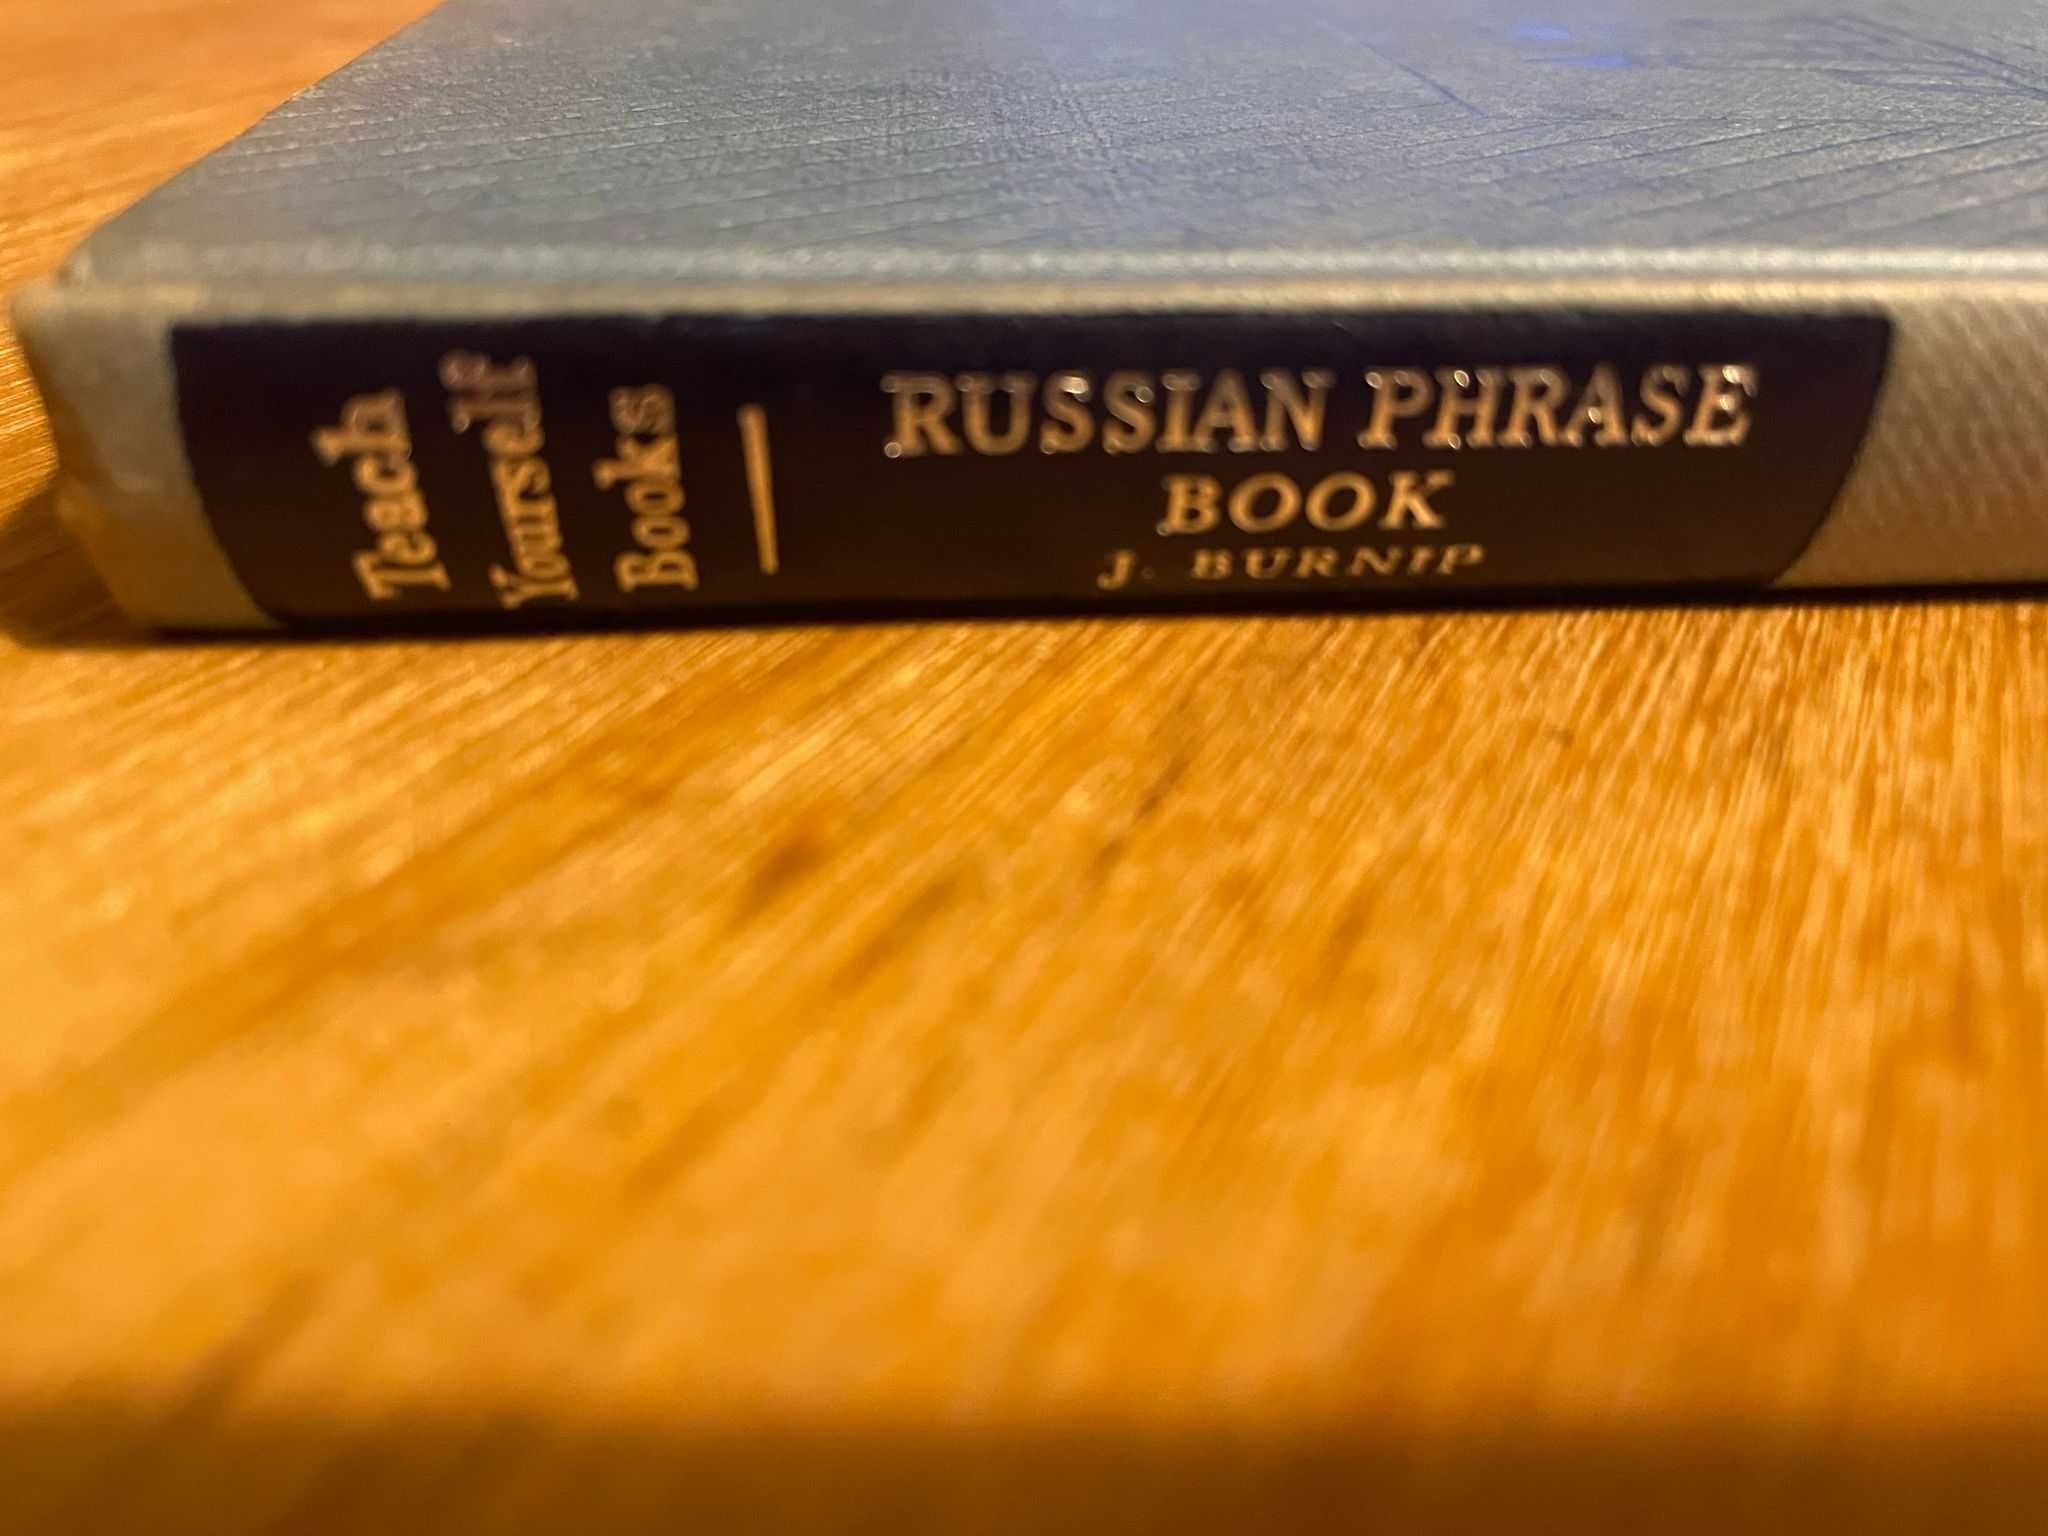 Livro “Russian Phrase Book” 1961